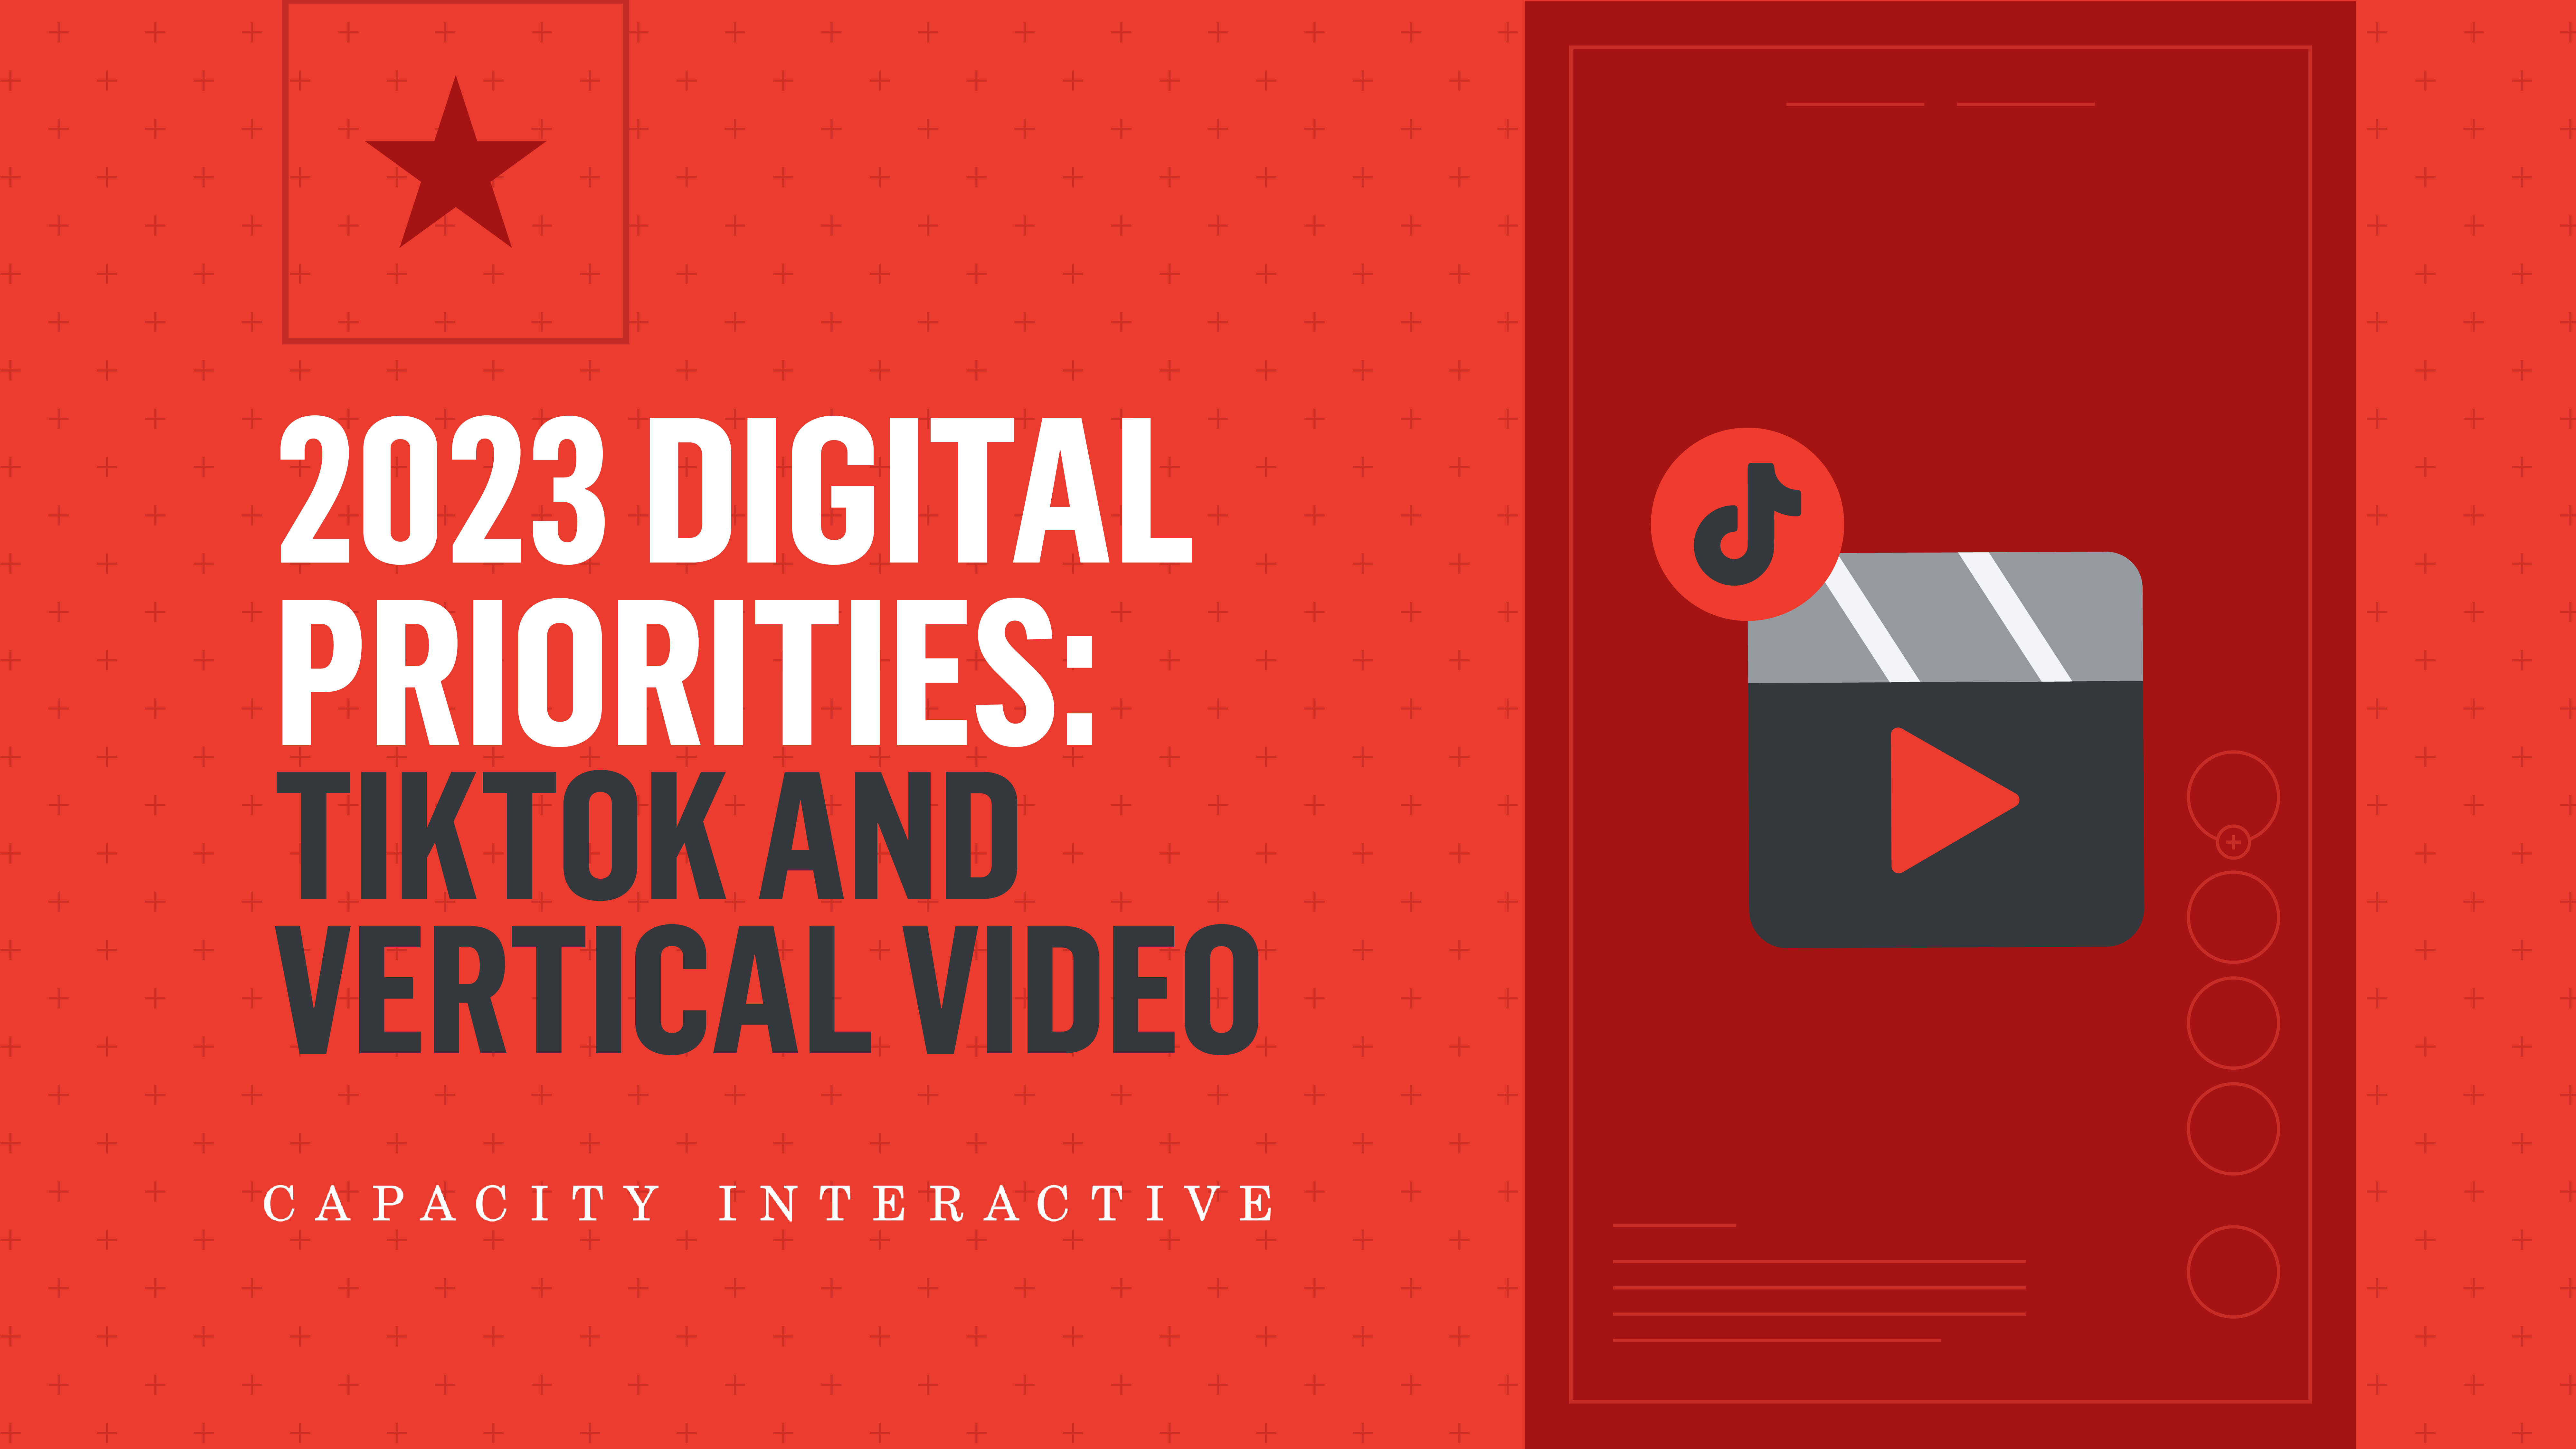 01-11 - 2023 Digital Priorities - Vertical Video